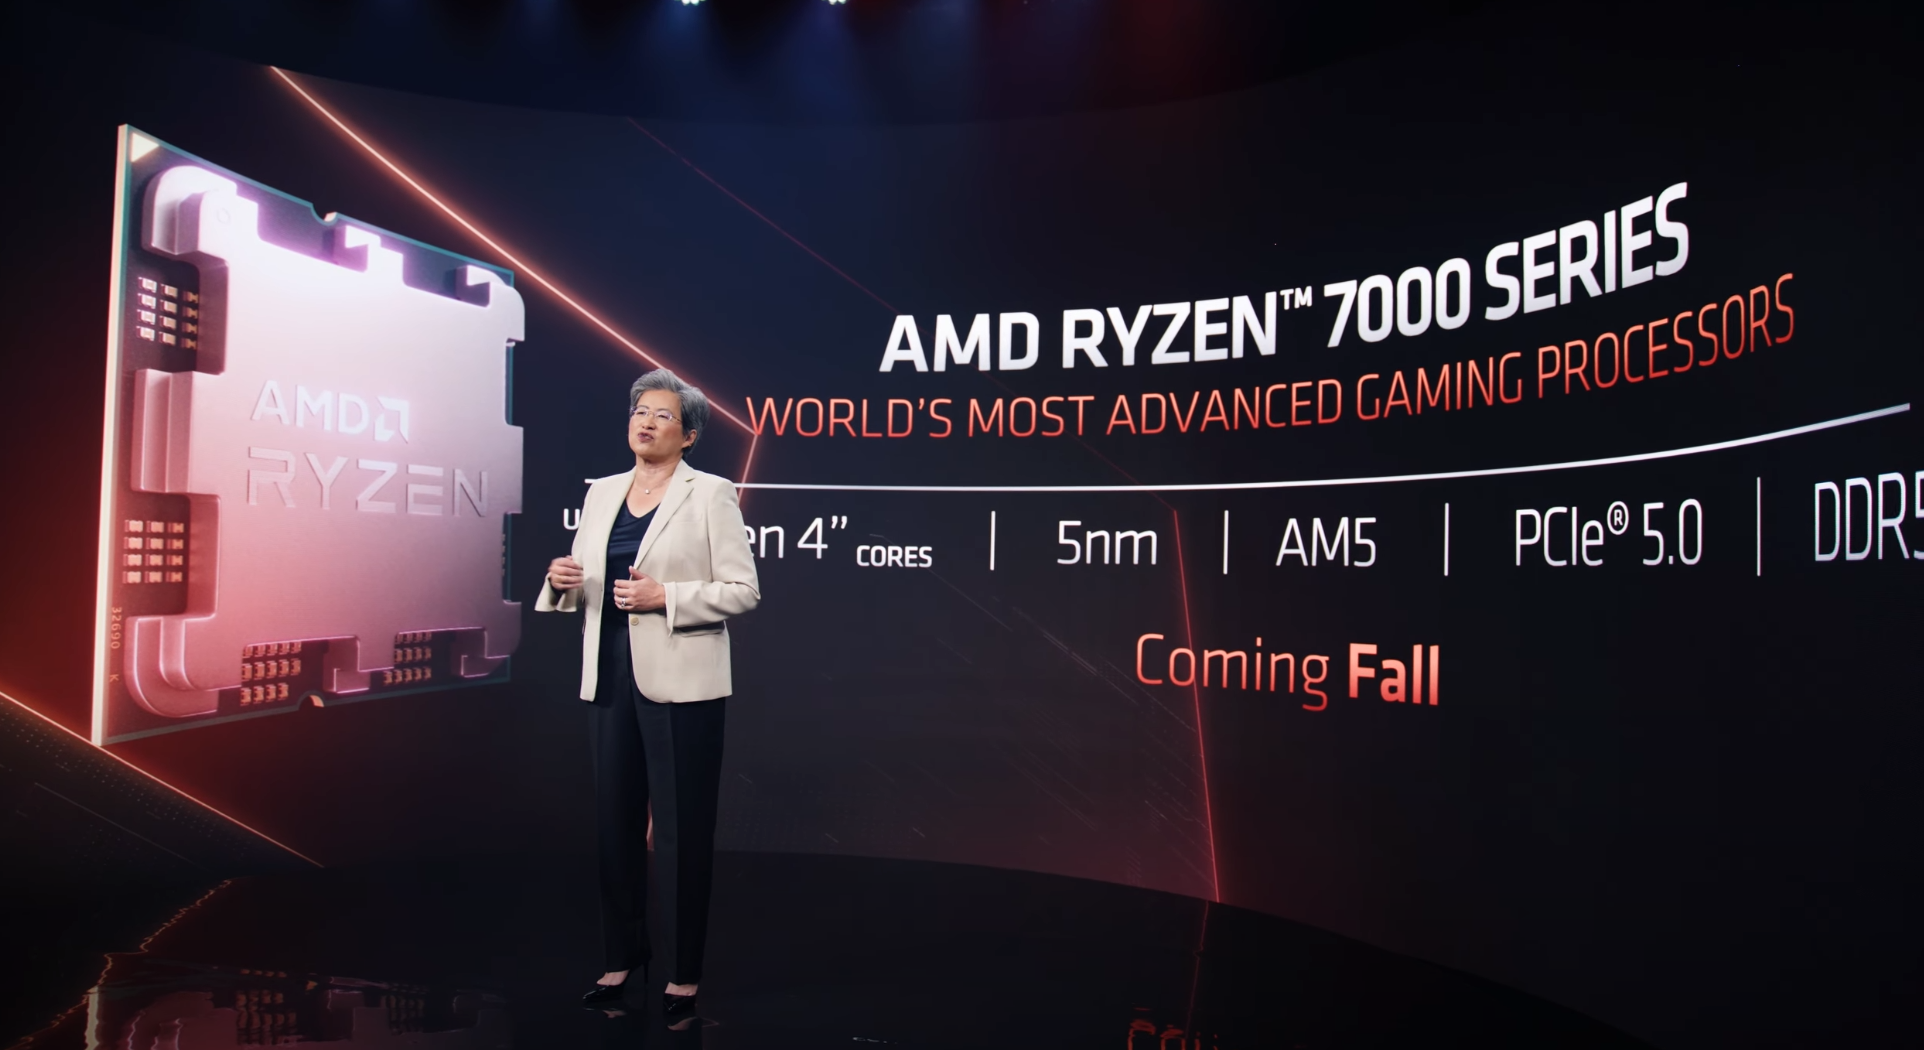 Gerücht: AMD Ryzen 7000 soll am 27. September erscheinen